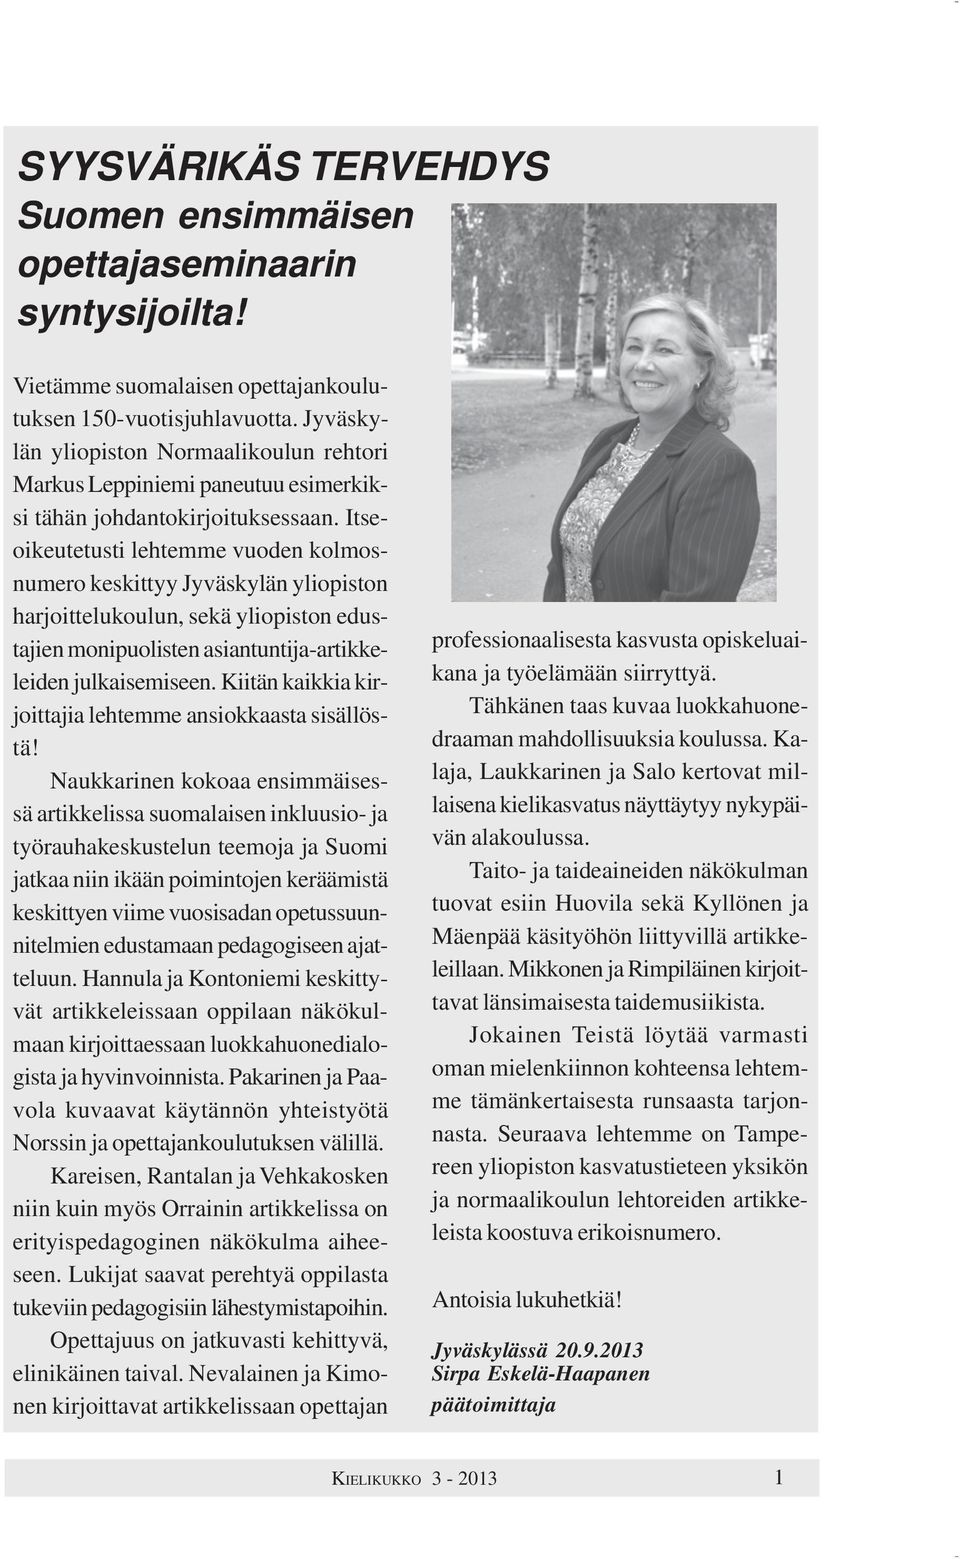 Itseoikeutetusti lehtemme vuoden kolmosnumero keskittyy Jyväskylän yliopiston harjoittelukoulun, sekä yliopiston edustajien monipuolisten asiantuntija-artikkeleiden julkaisemiseen.